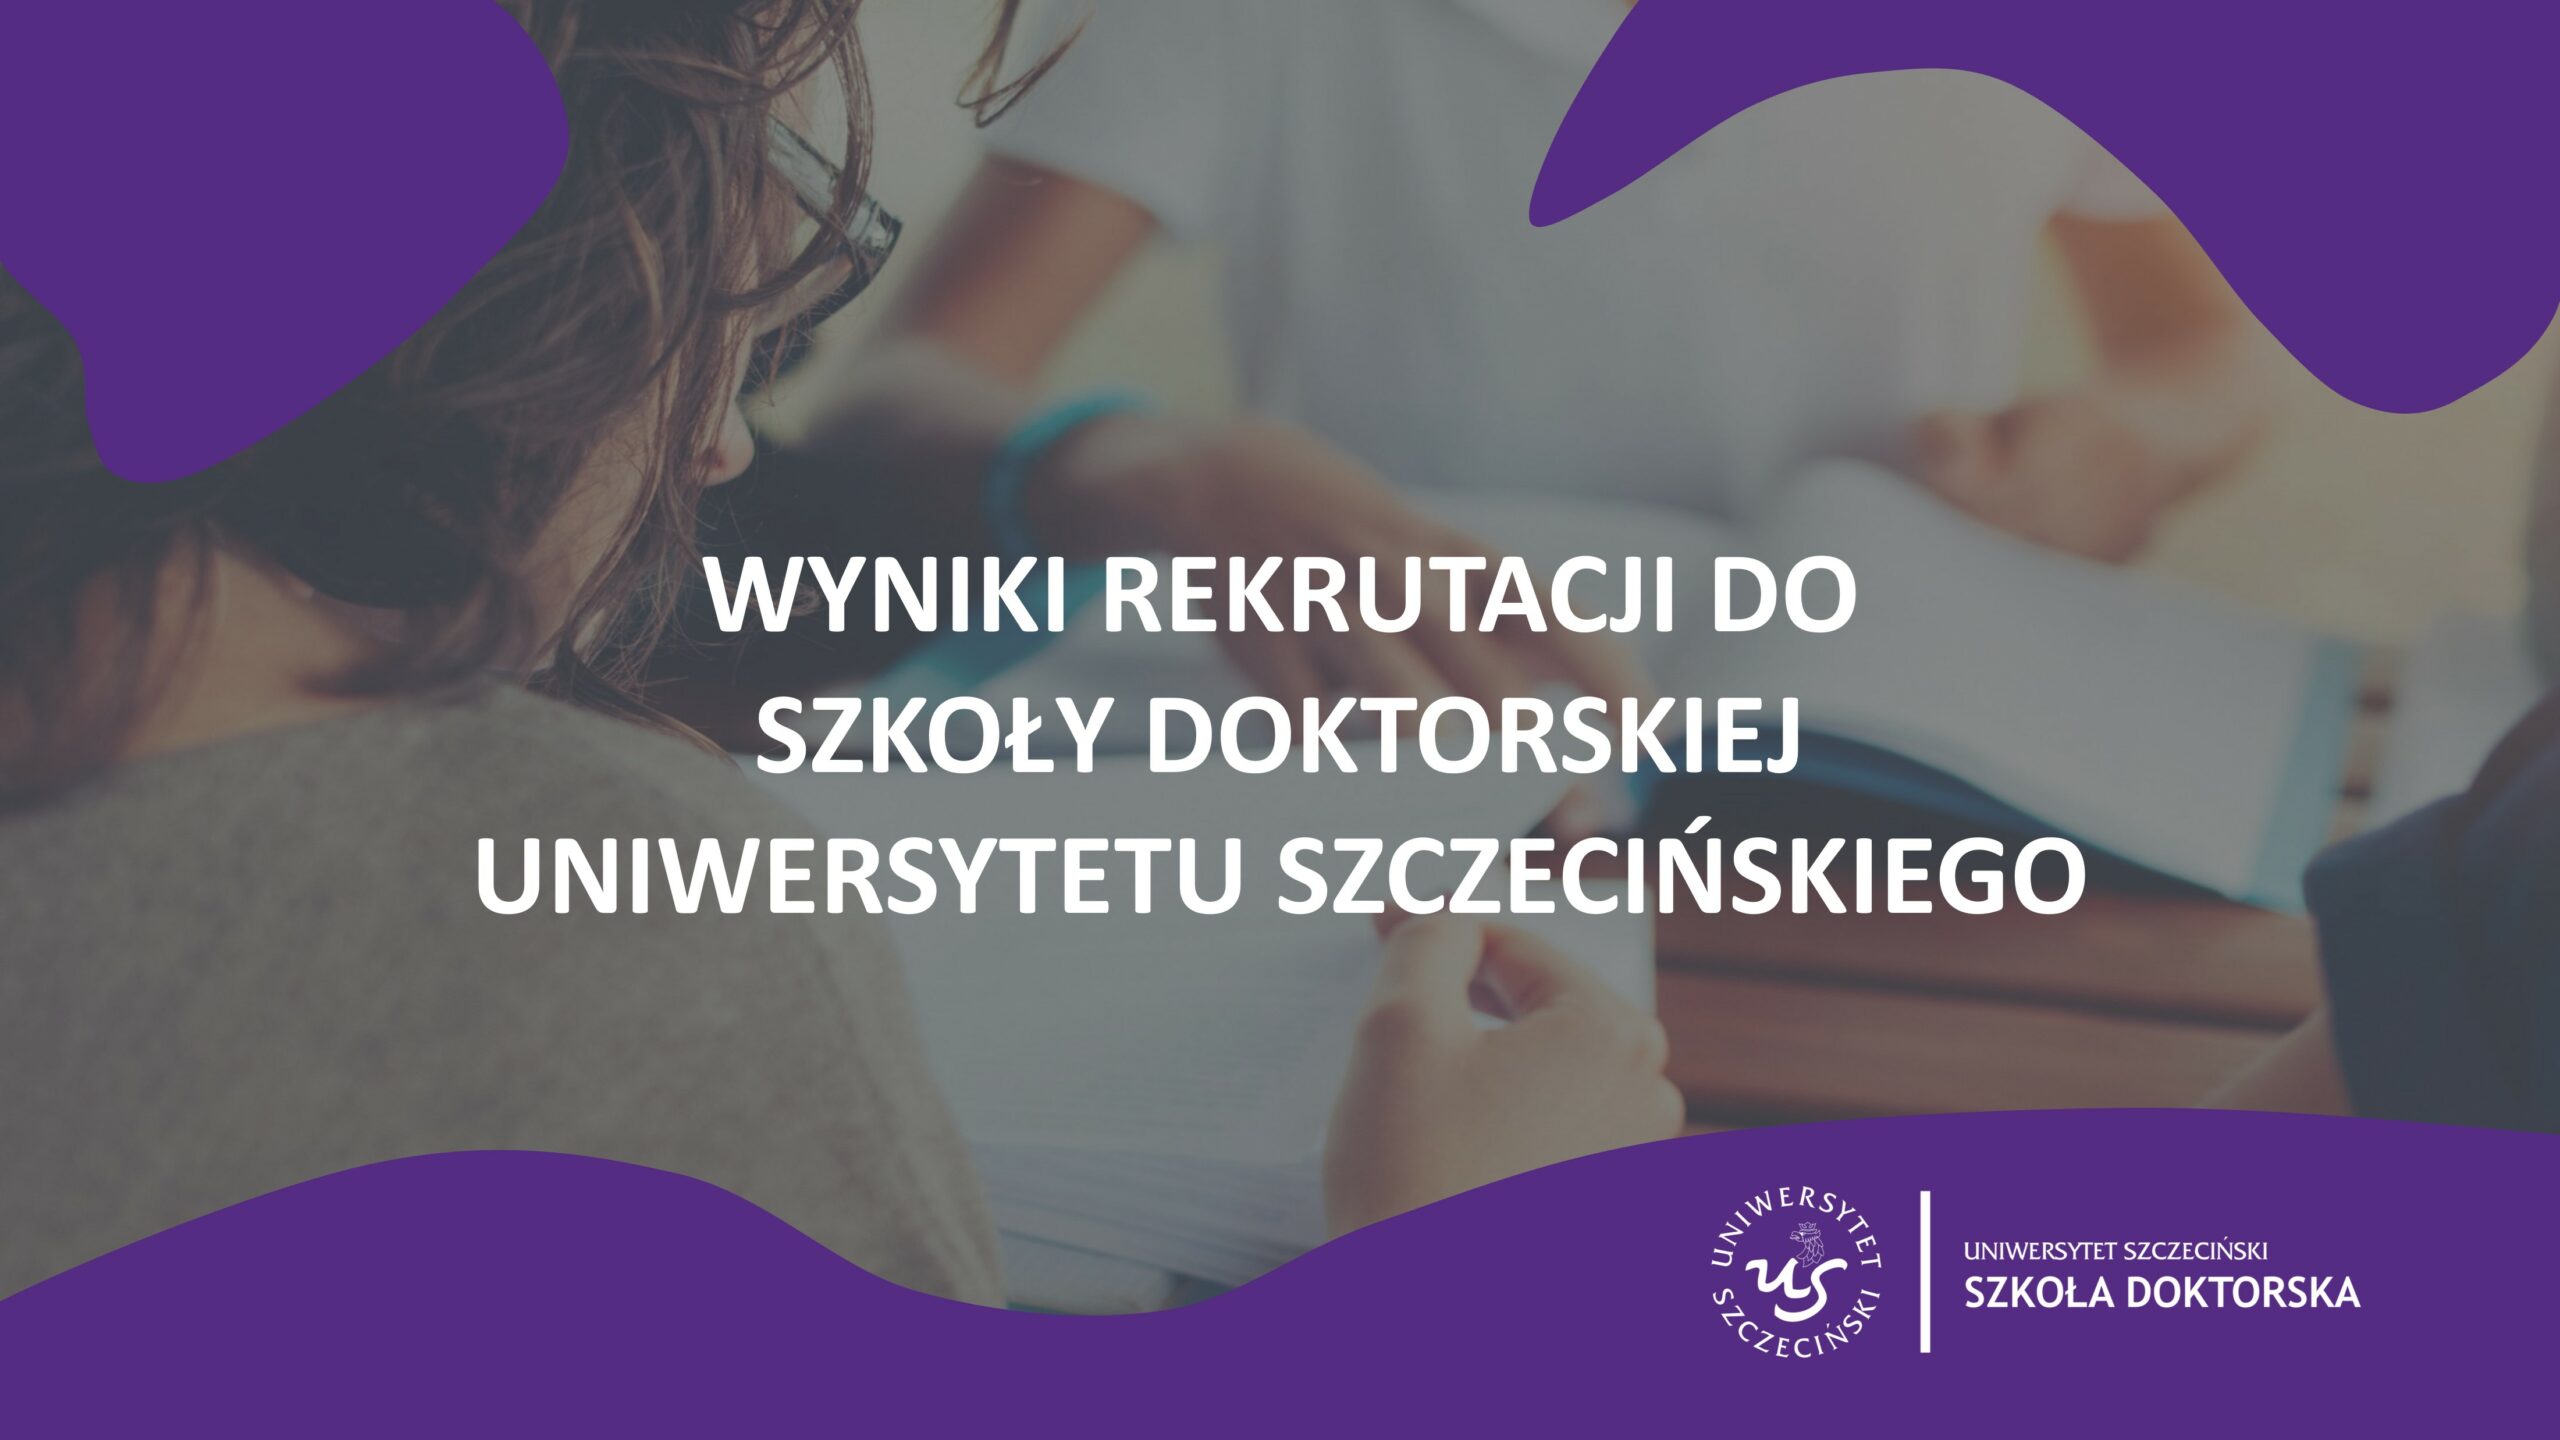 Wyniki rekrutacji do Szkoły Doktorskiej Uniwersytetu Szczecińskiego w roku akademickim 2021/2022